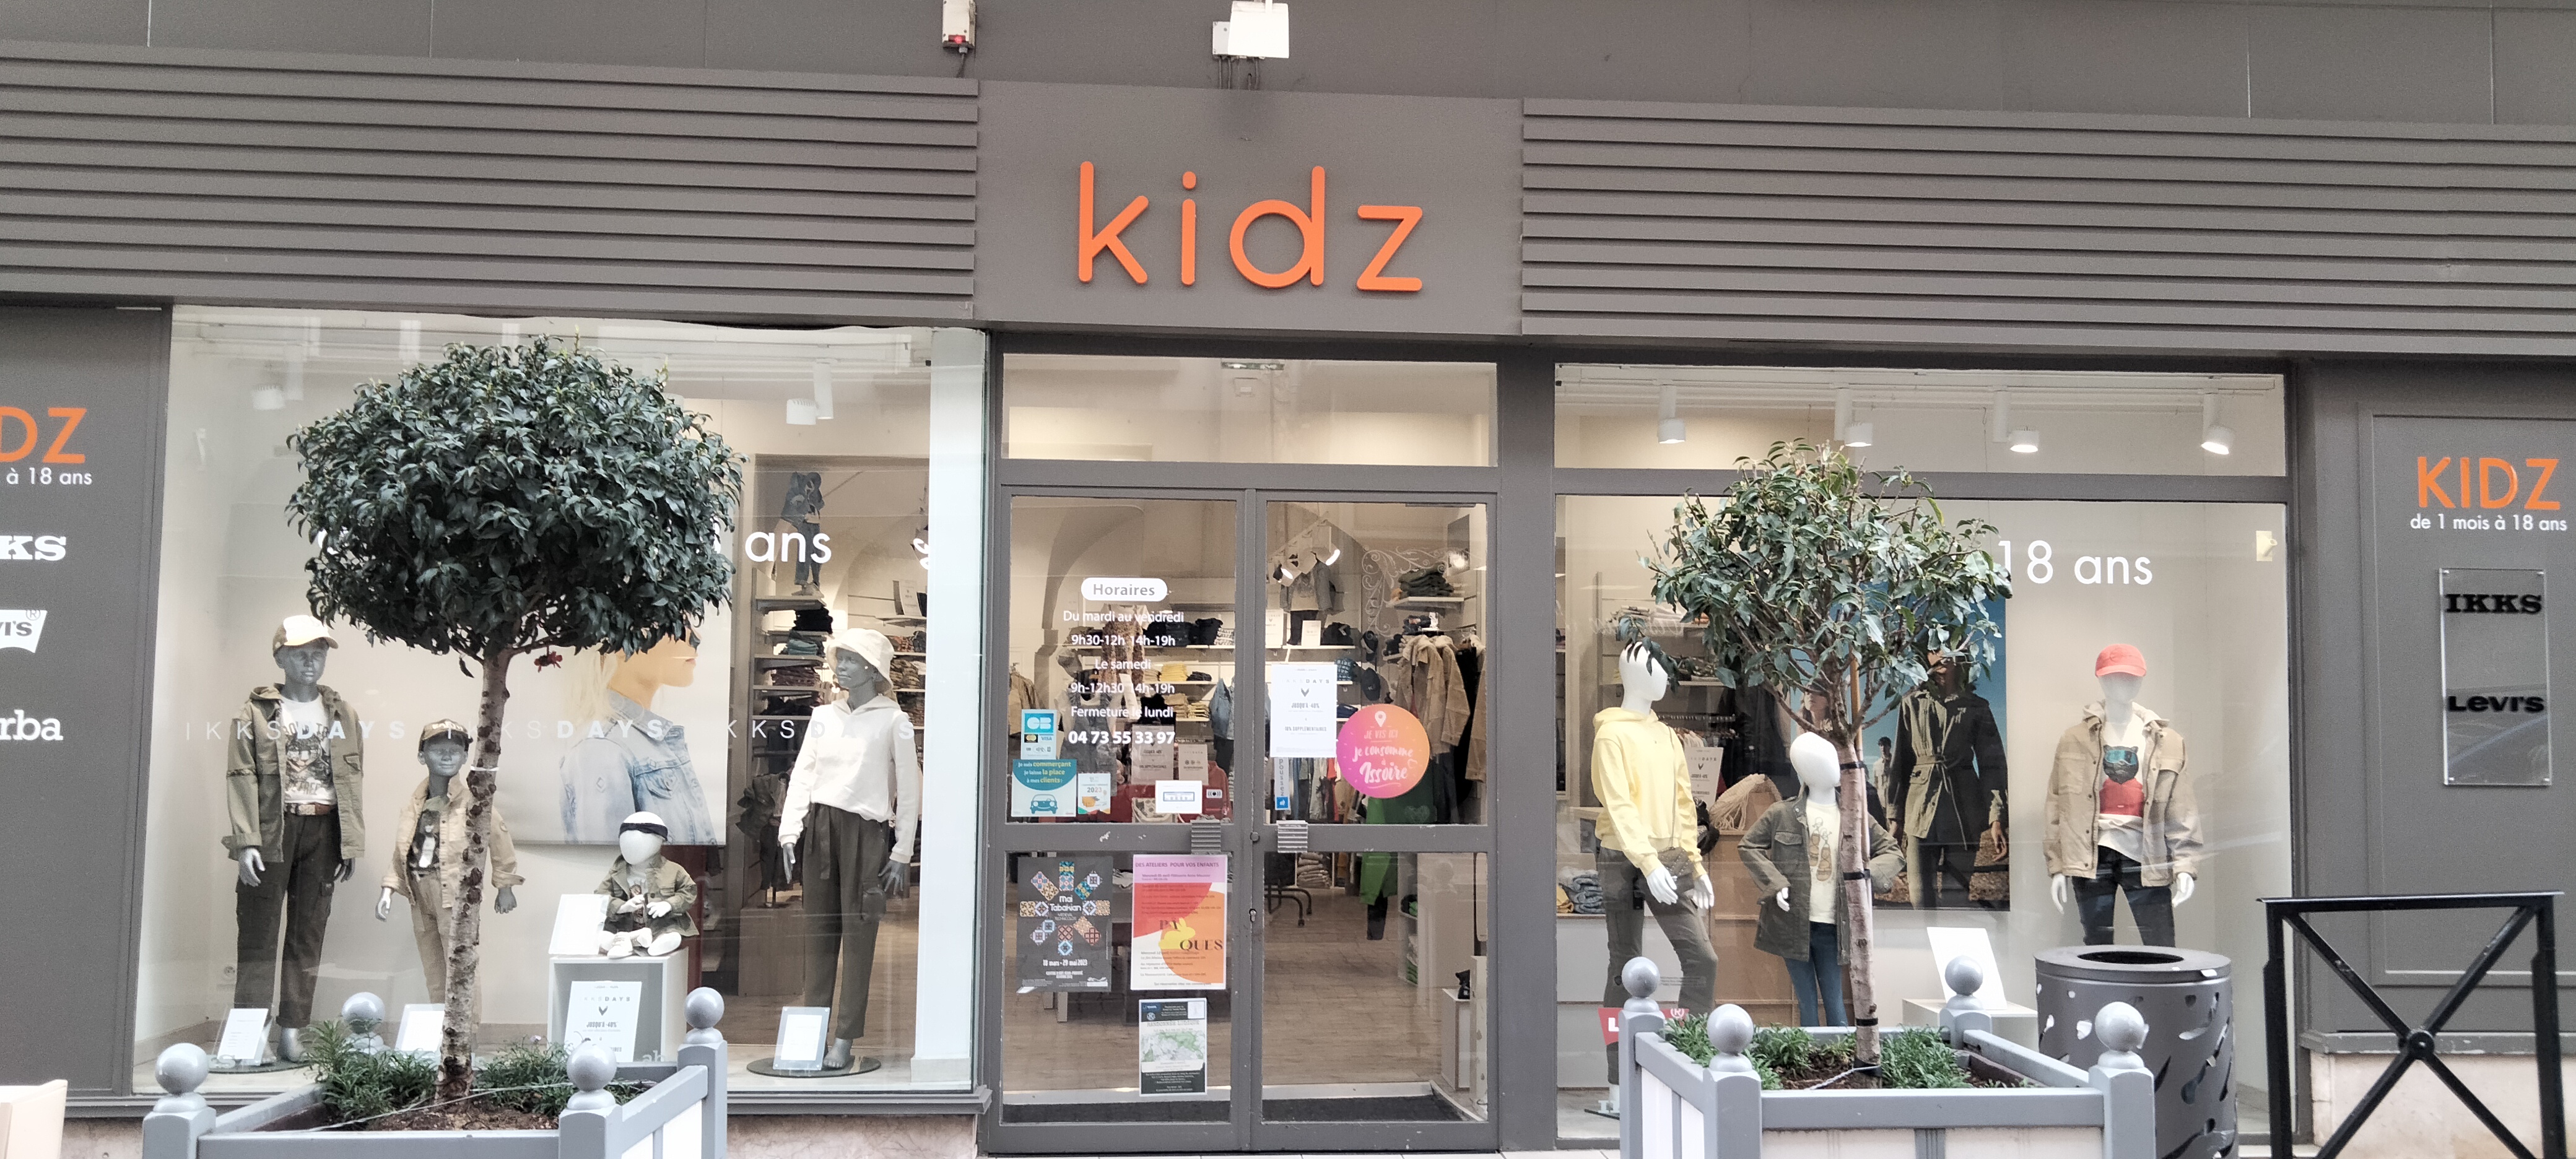 Cause retraite à vendre belle boutique pour enfants ( 3mois à 18 ans ) très bien située en centre ville d Issoire 
80 m2 de surface de vente
20m2 de réserve